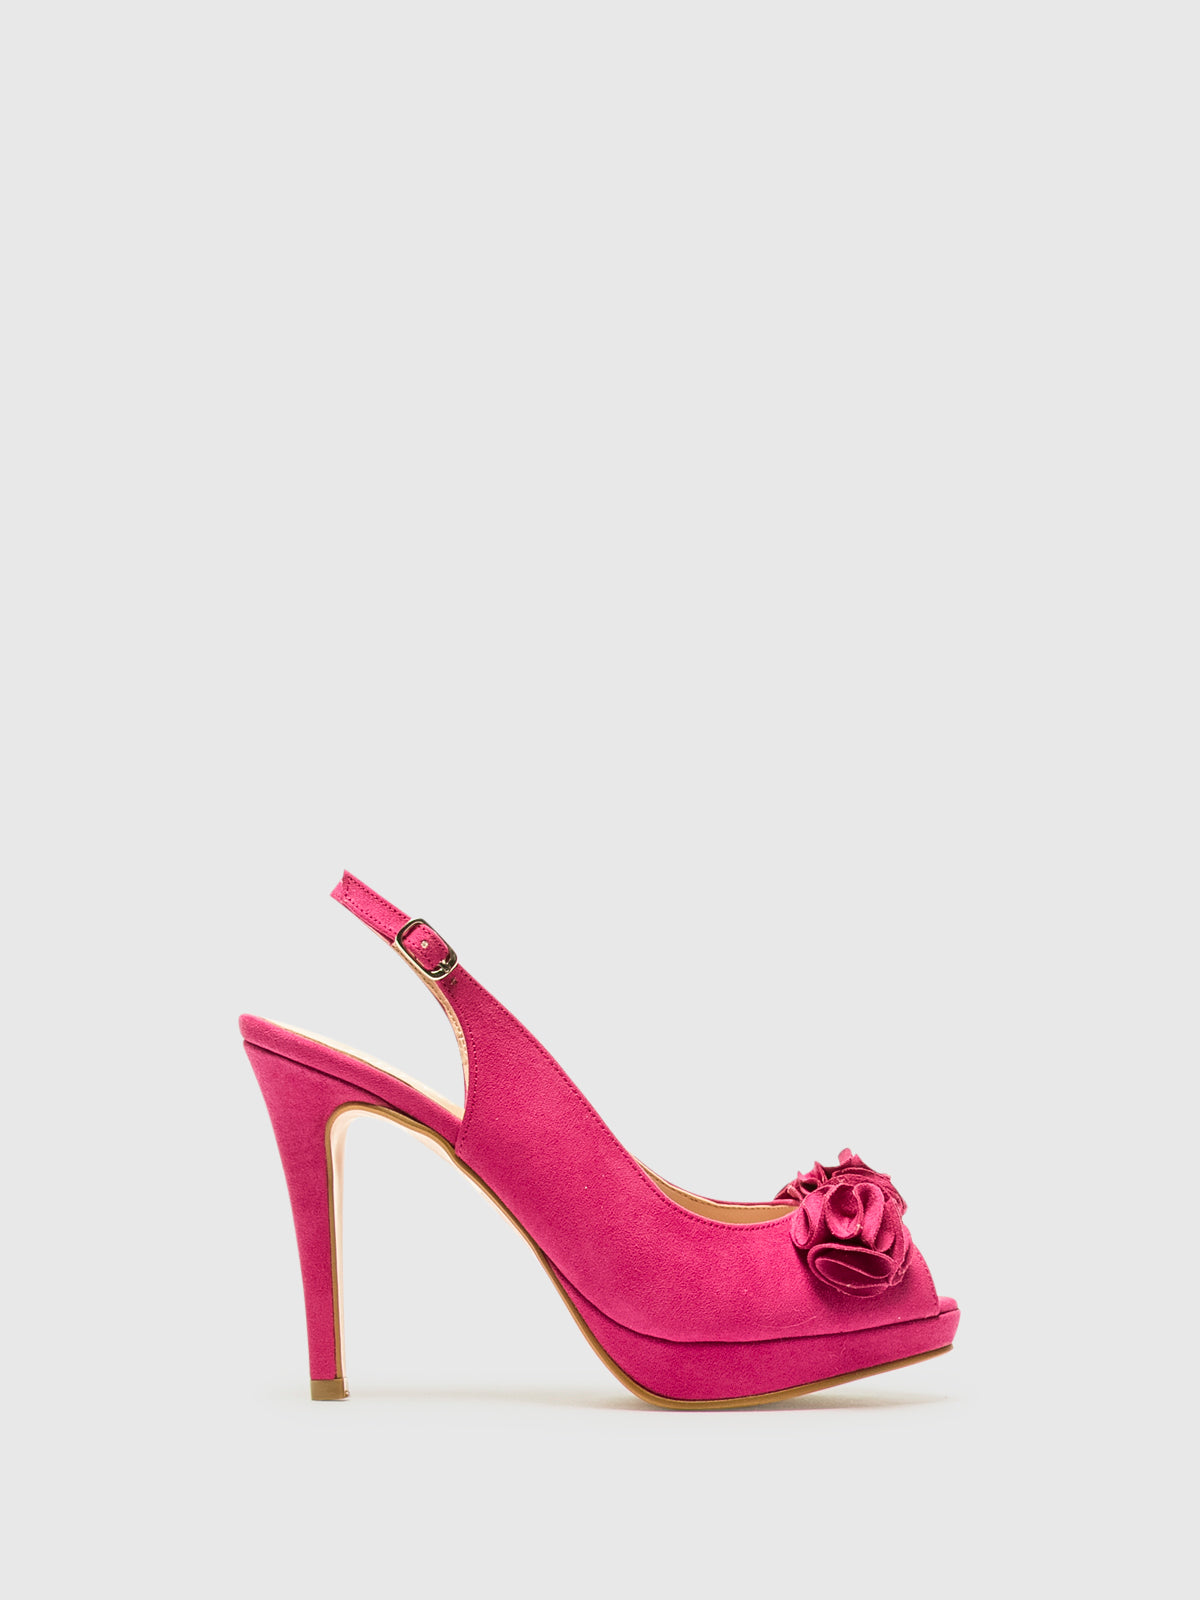 Foreva Pink Platform Shoes